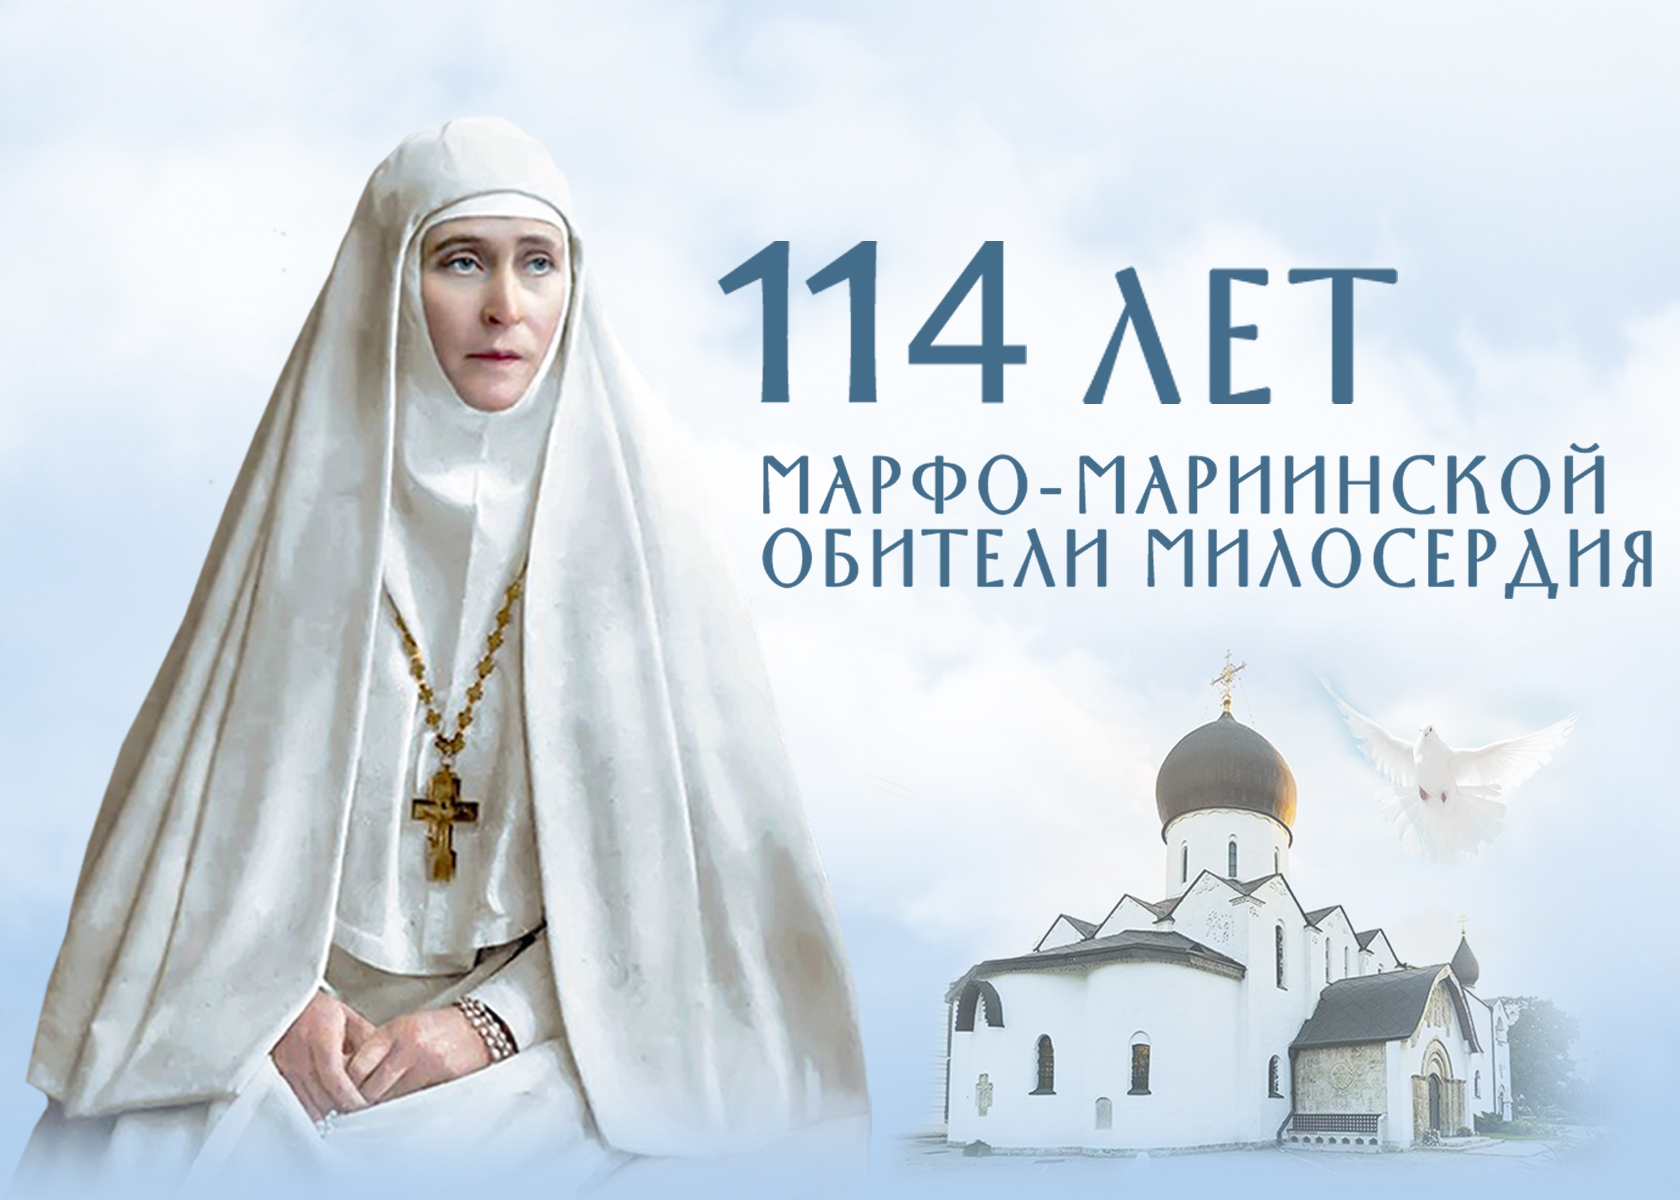 В Марфо-Мариинской обители пройдут праздничные мероприятия к 114-летию монастыря